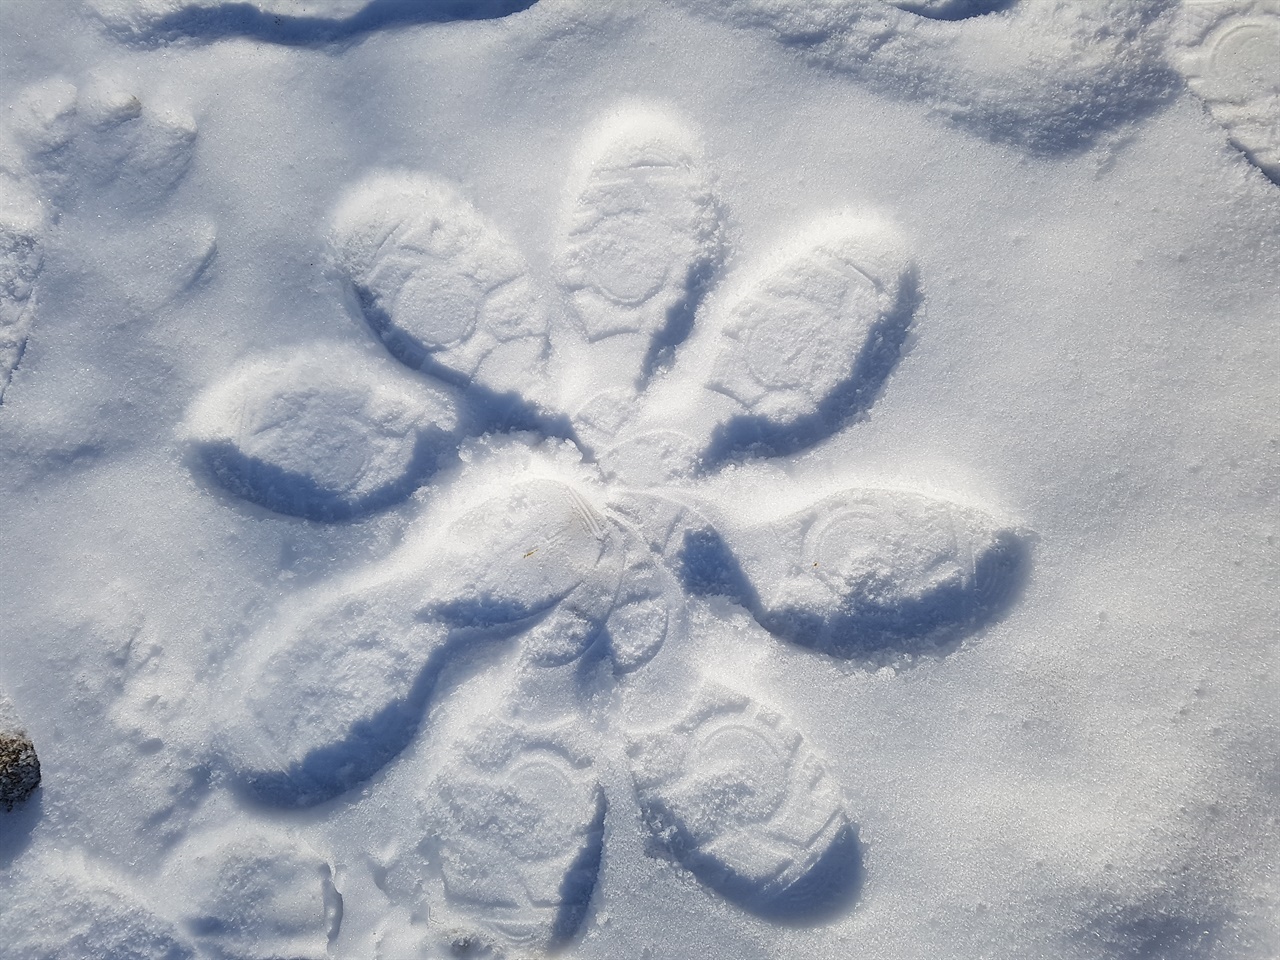 걷기를 하면서 녹지 않은 운동장 눈위에 발자국으로 눈꽃을 만들었다.